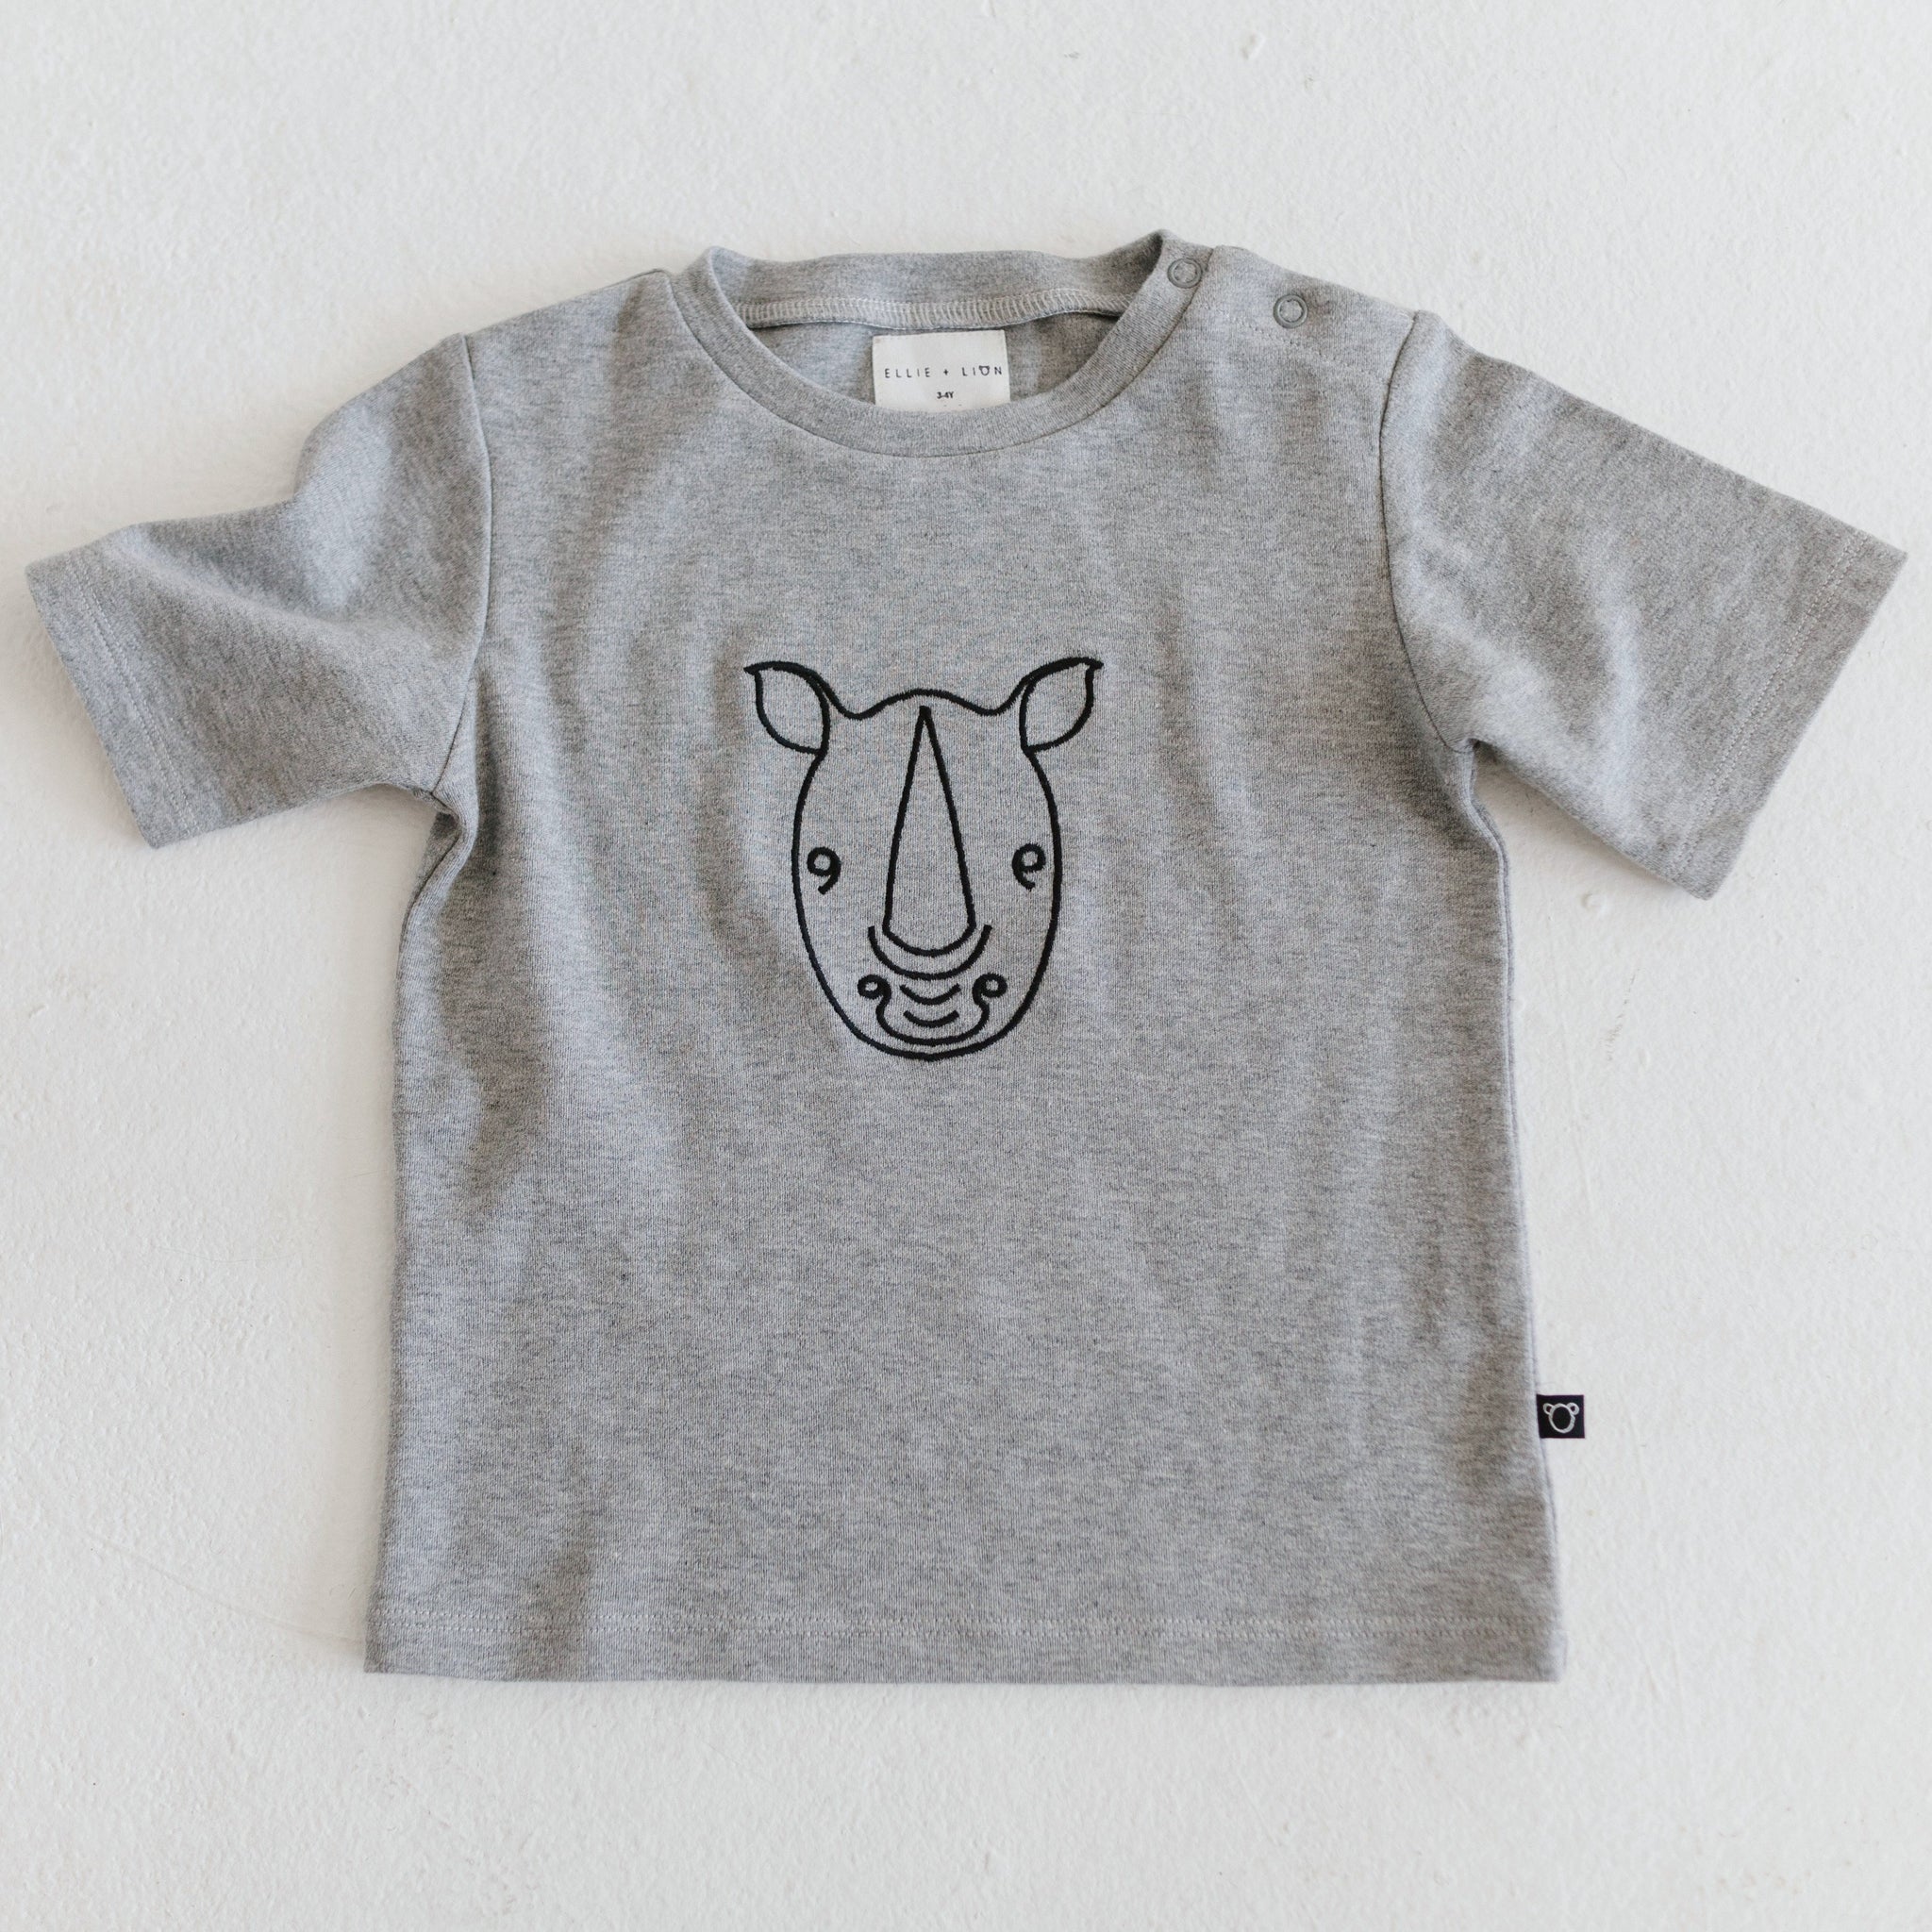 Rhino motif t-shirt